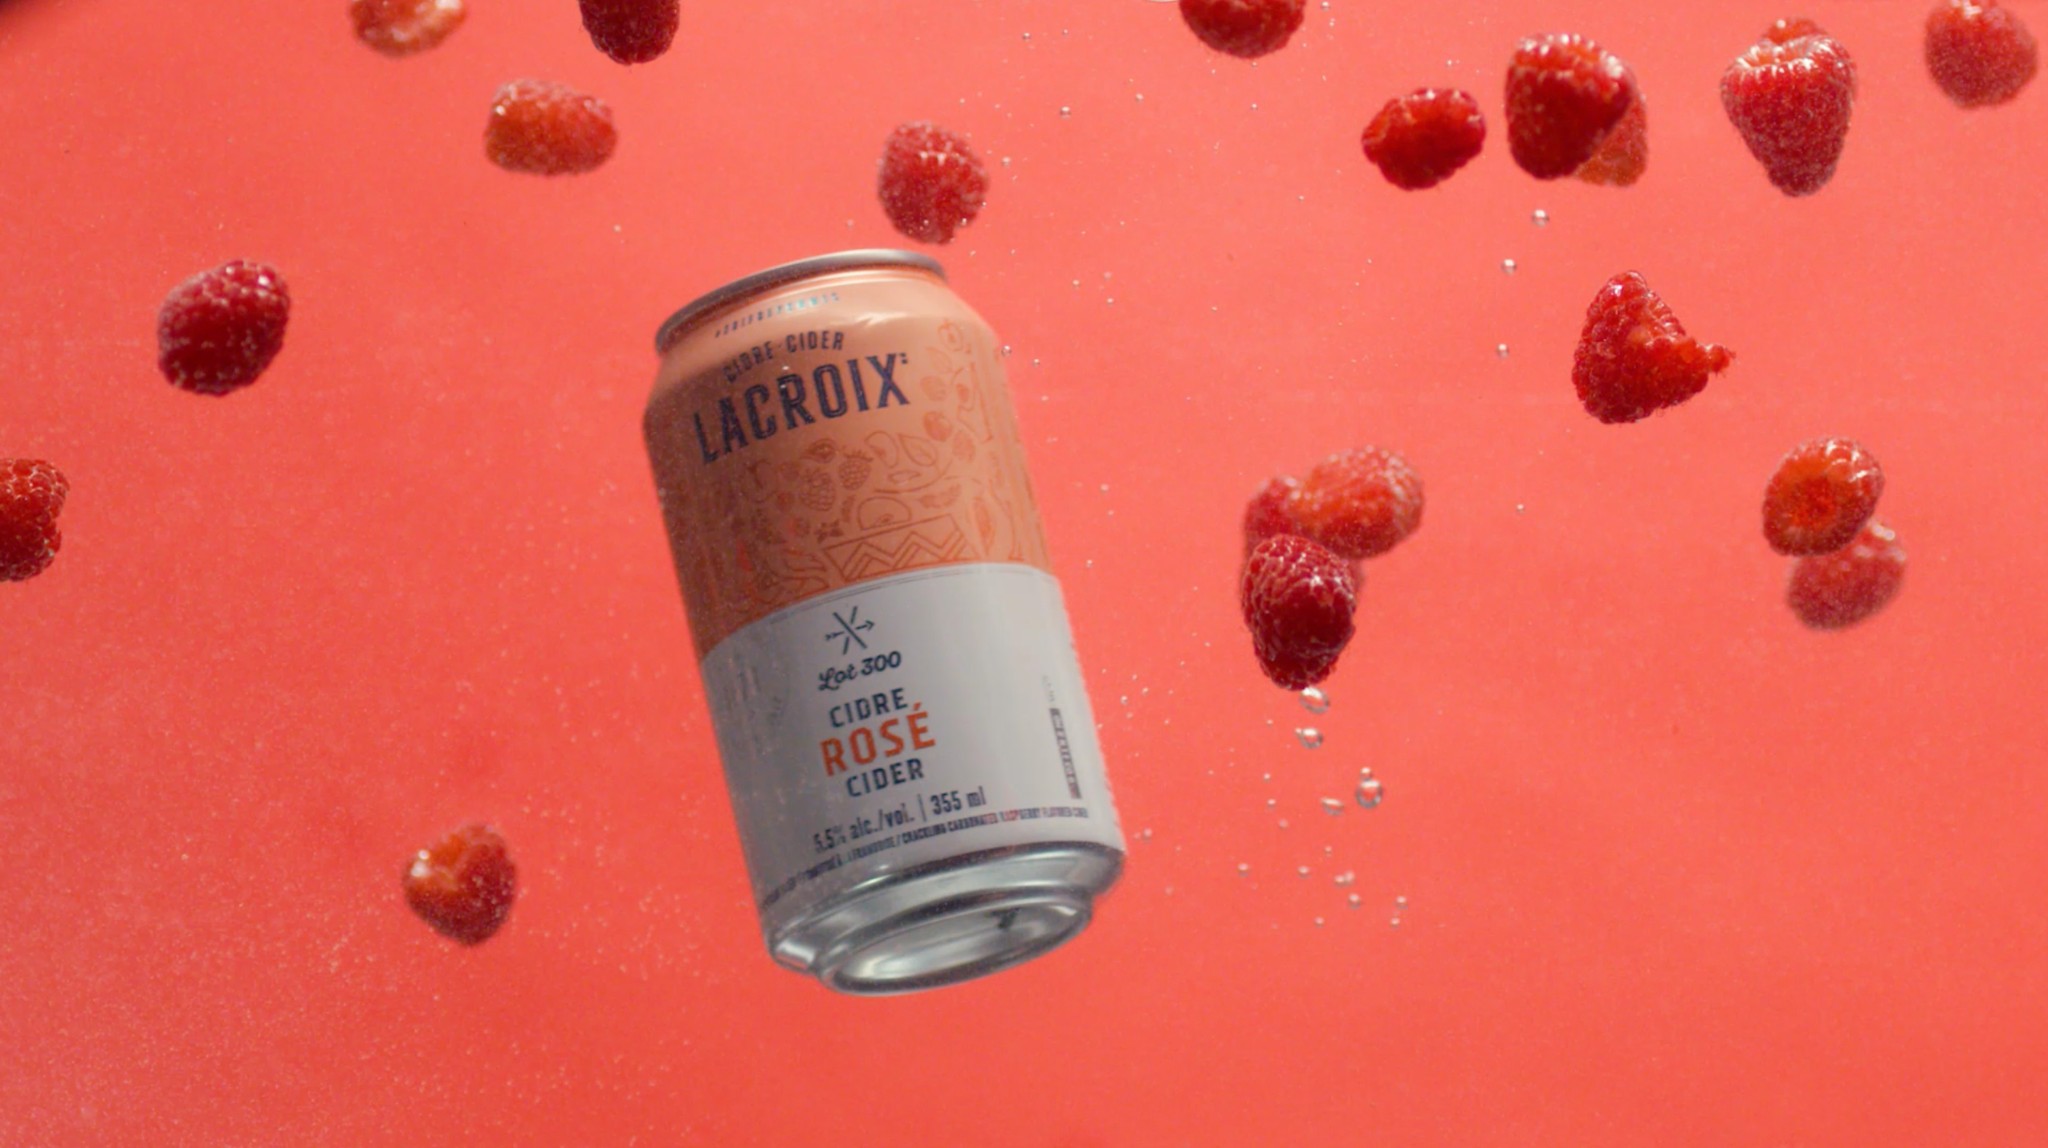 Featured image for “Lacroix Lot 300 April 2020 Campaign Launch”